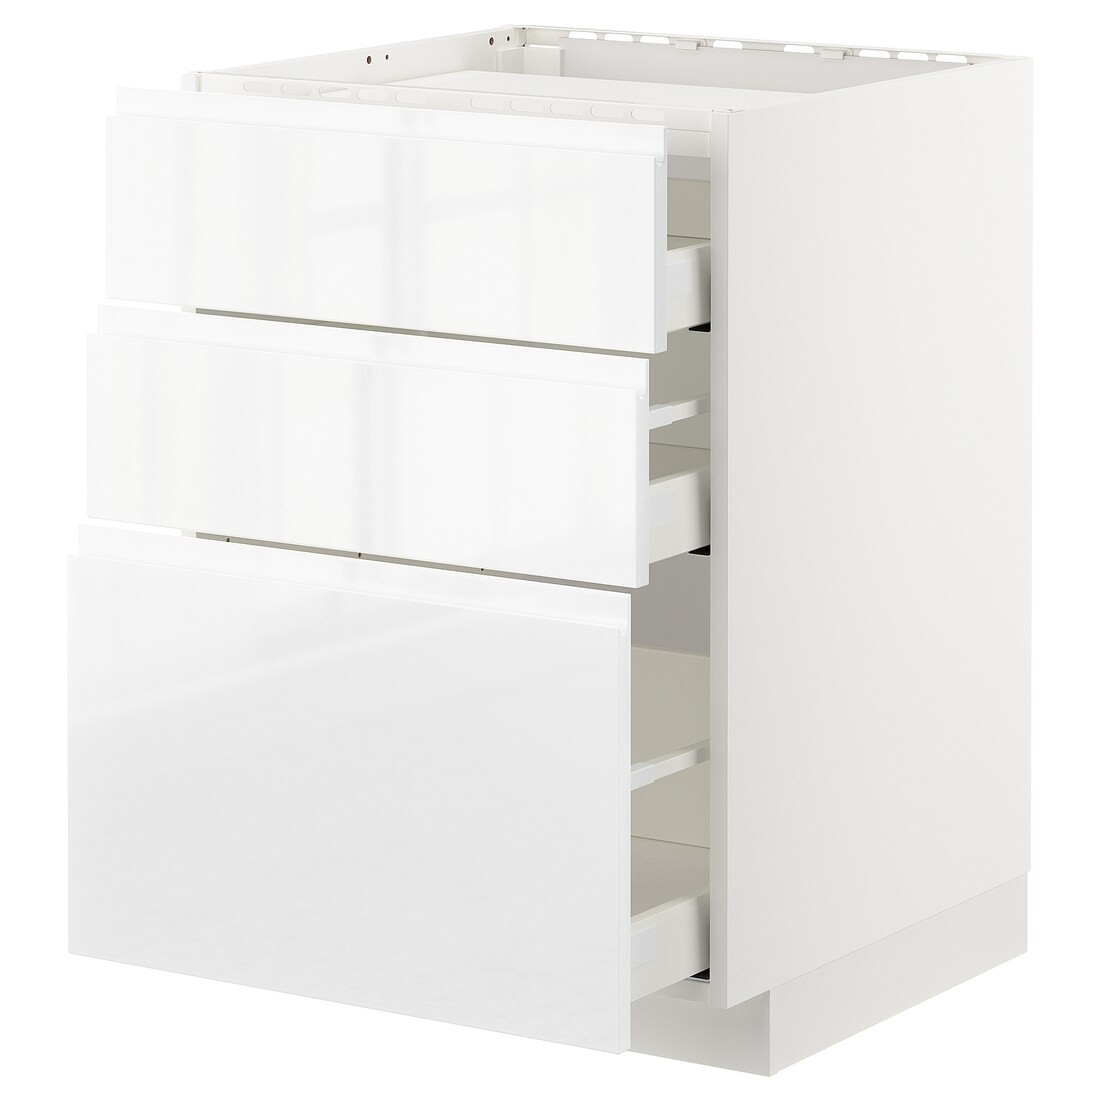 IKEA METOD МЕТОД / MAXIMERA МАКСИМЕРА Напольный шкаф с ящиками, белый / Voxtorp глянцевый / белый, 60x60 см 19253945 192.539.45